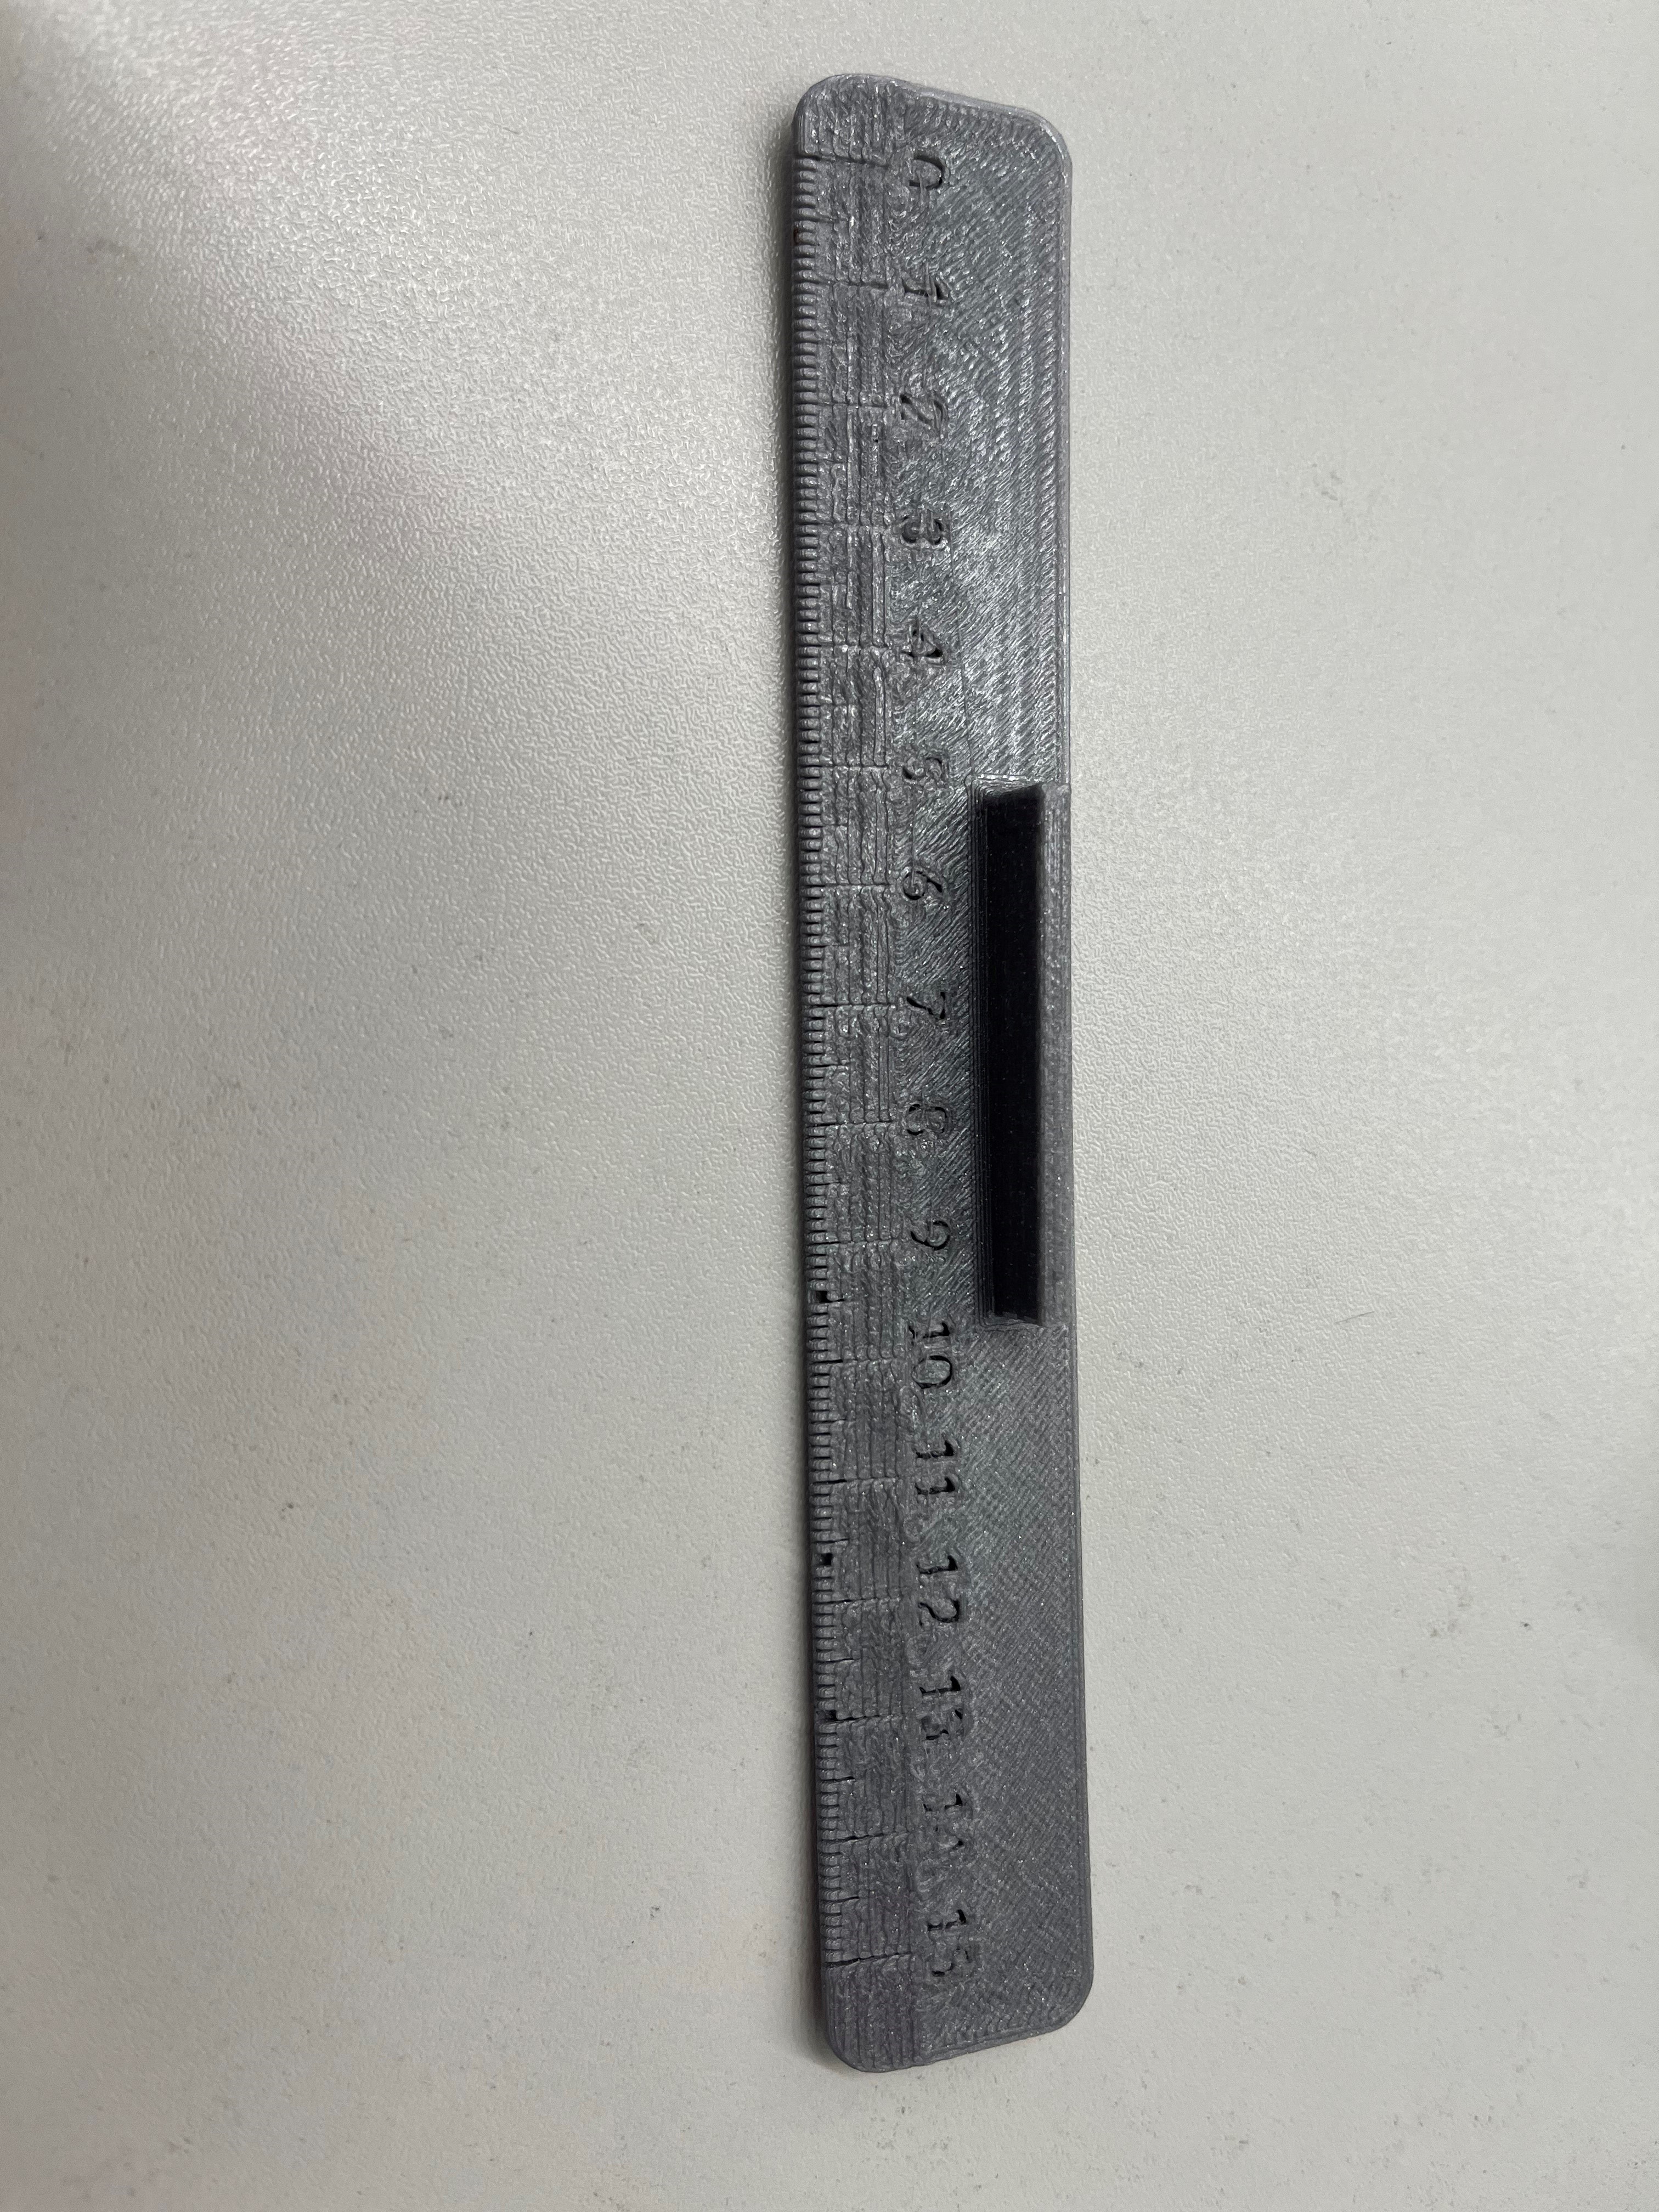 15cm Ruler